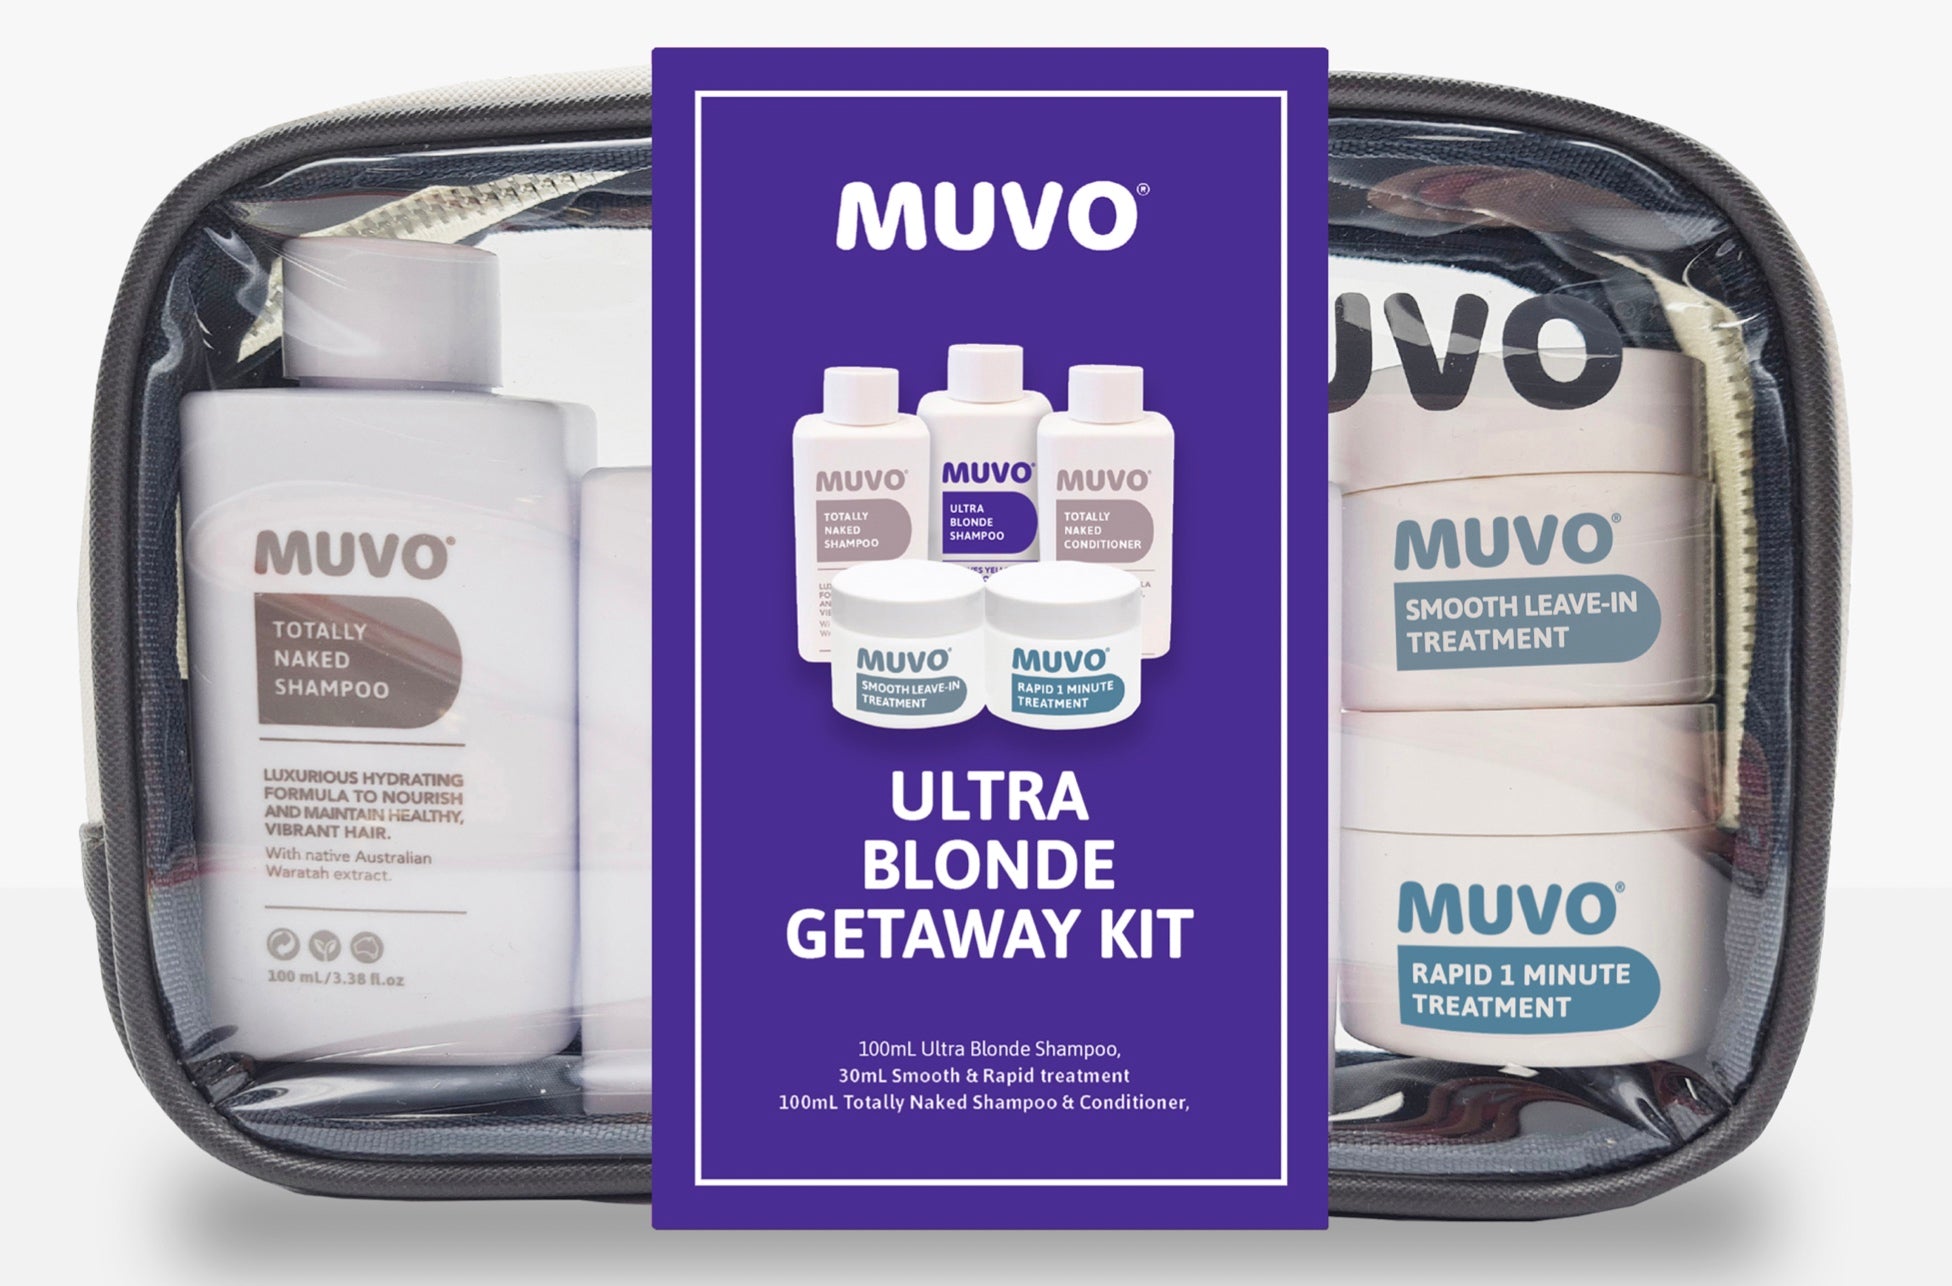 MUVO Ultra Blonde Getaway Kit [DEL]